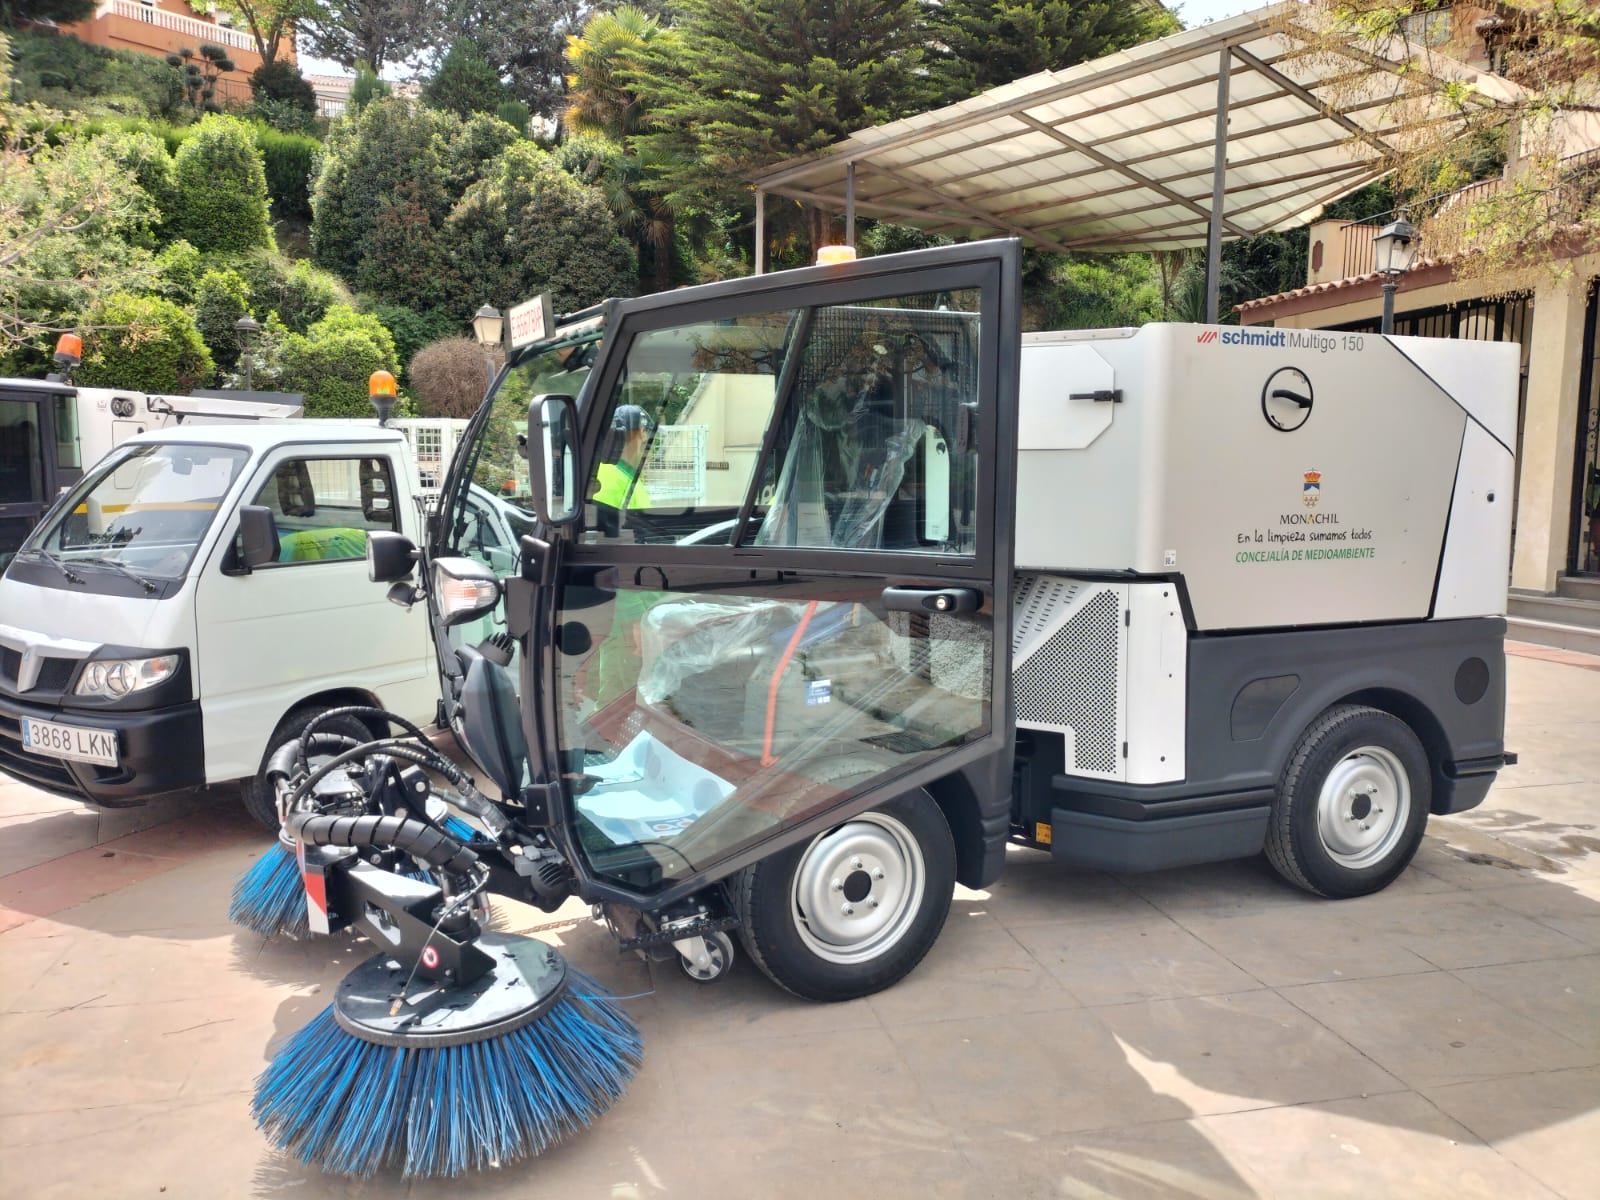 Monachil estrena una nueva barredora, que servirá para mejorar el servicio de limpieza viaria